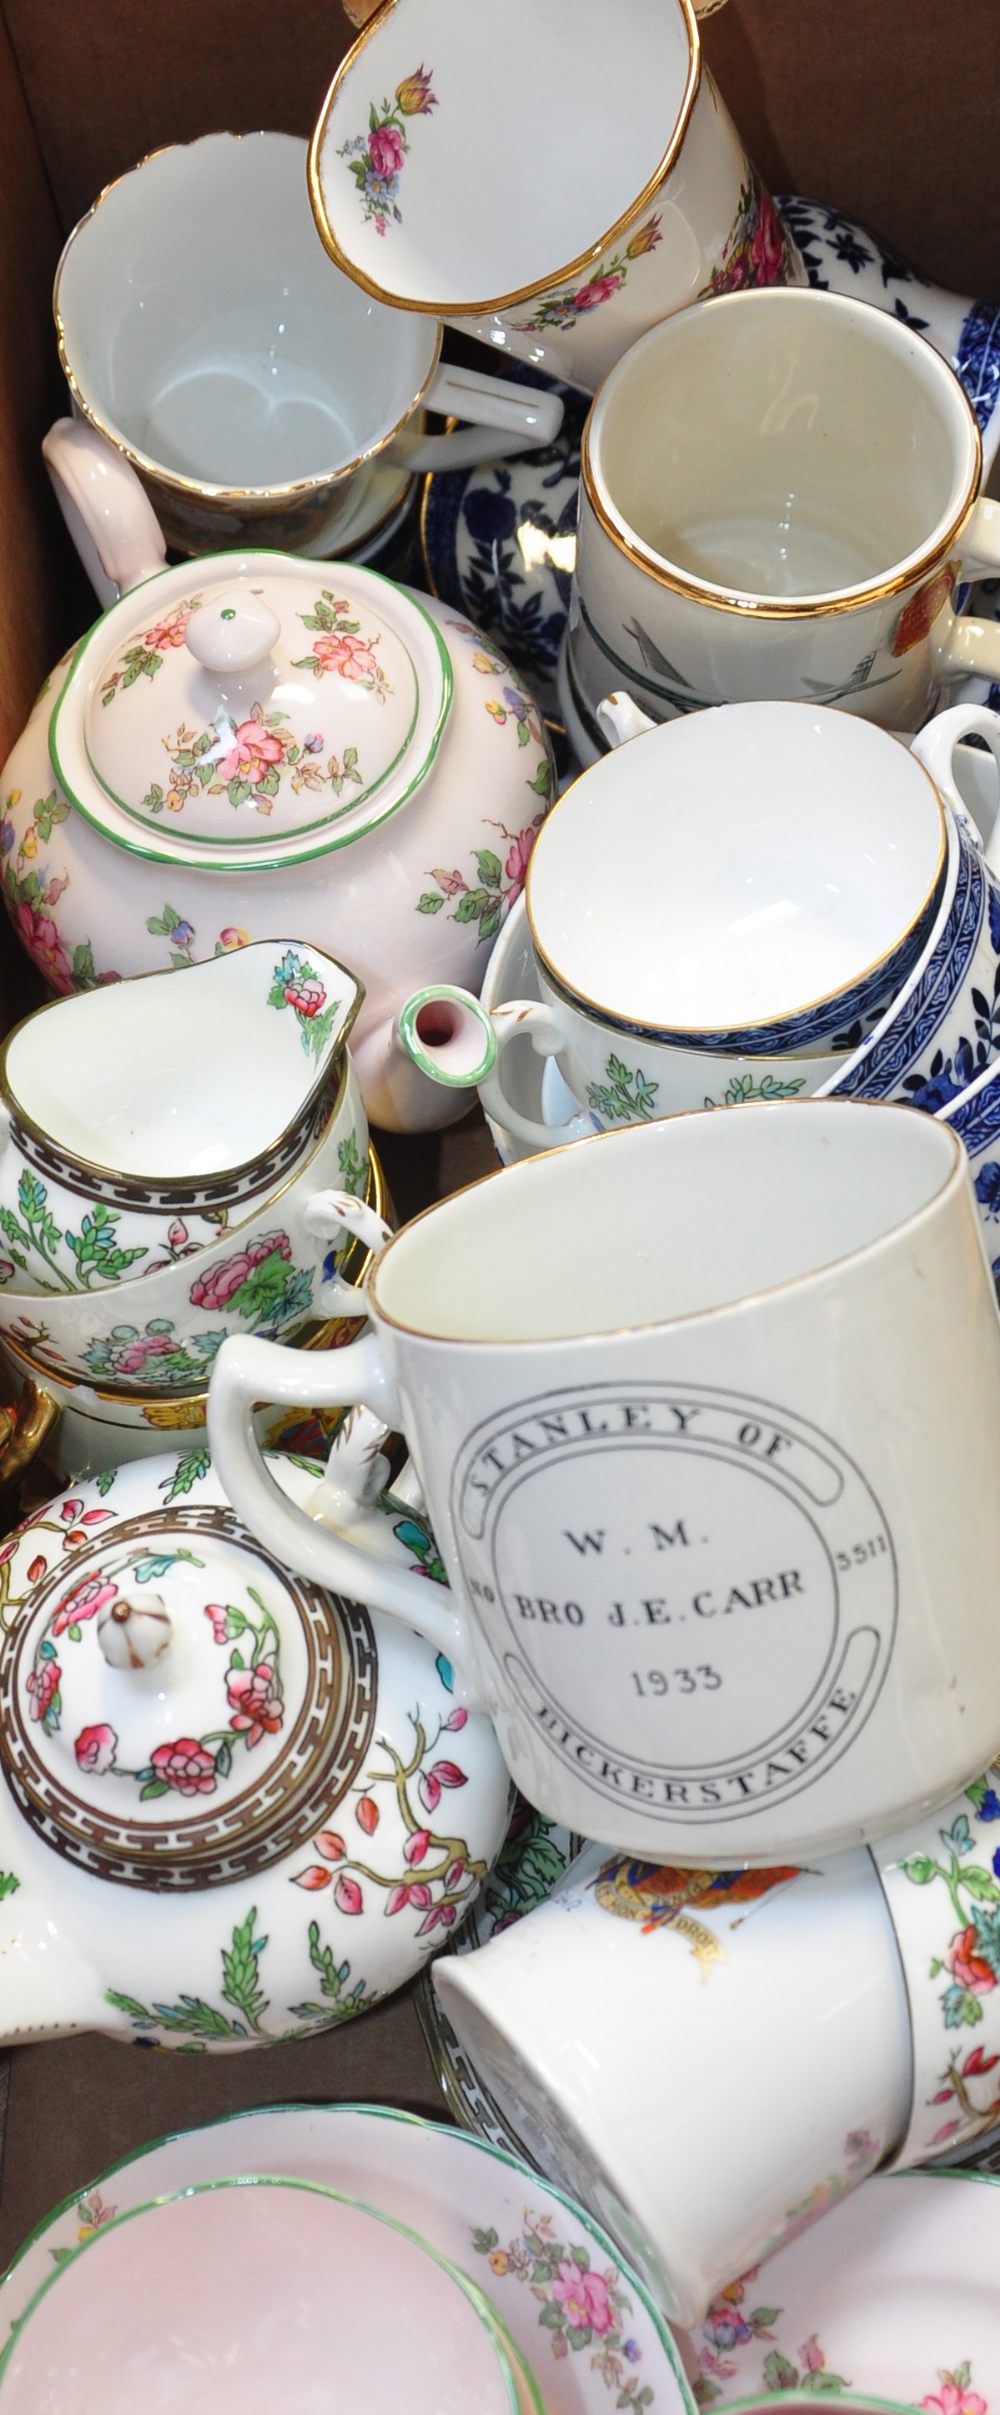 A quantity of c.1880 Coalport "Belfort" teaware including cups, saucers and milk jug, a small